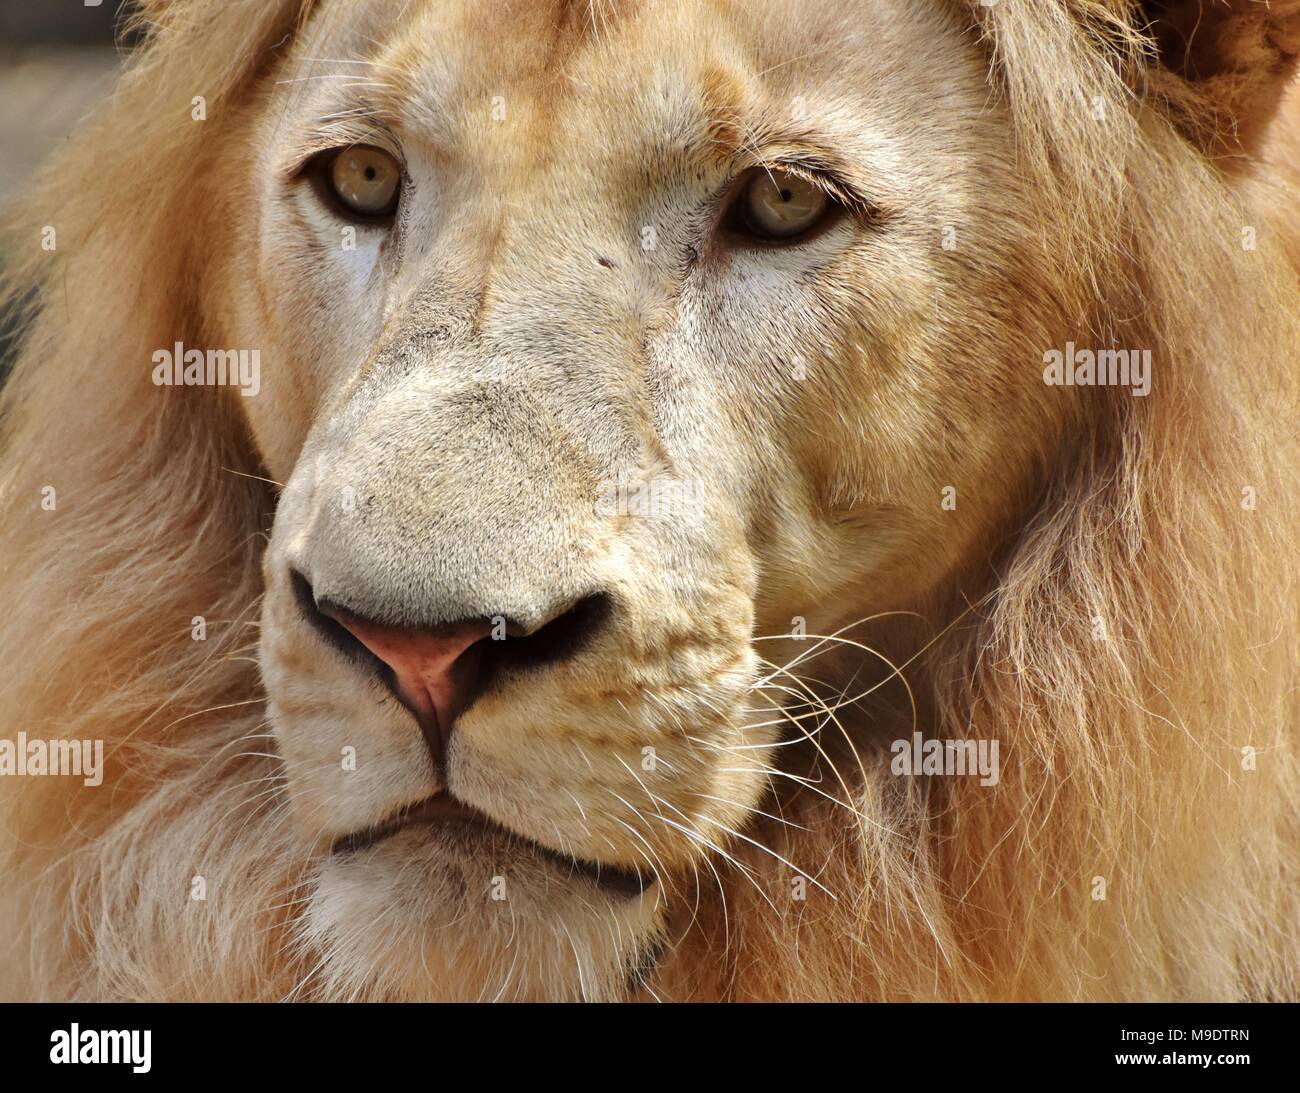 Portrait en gros plan du visage d'un homme lion (Panthera leo). Banque D'Images